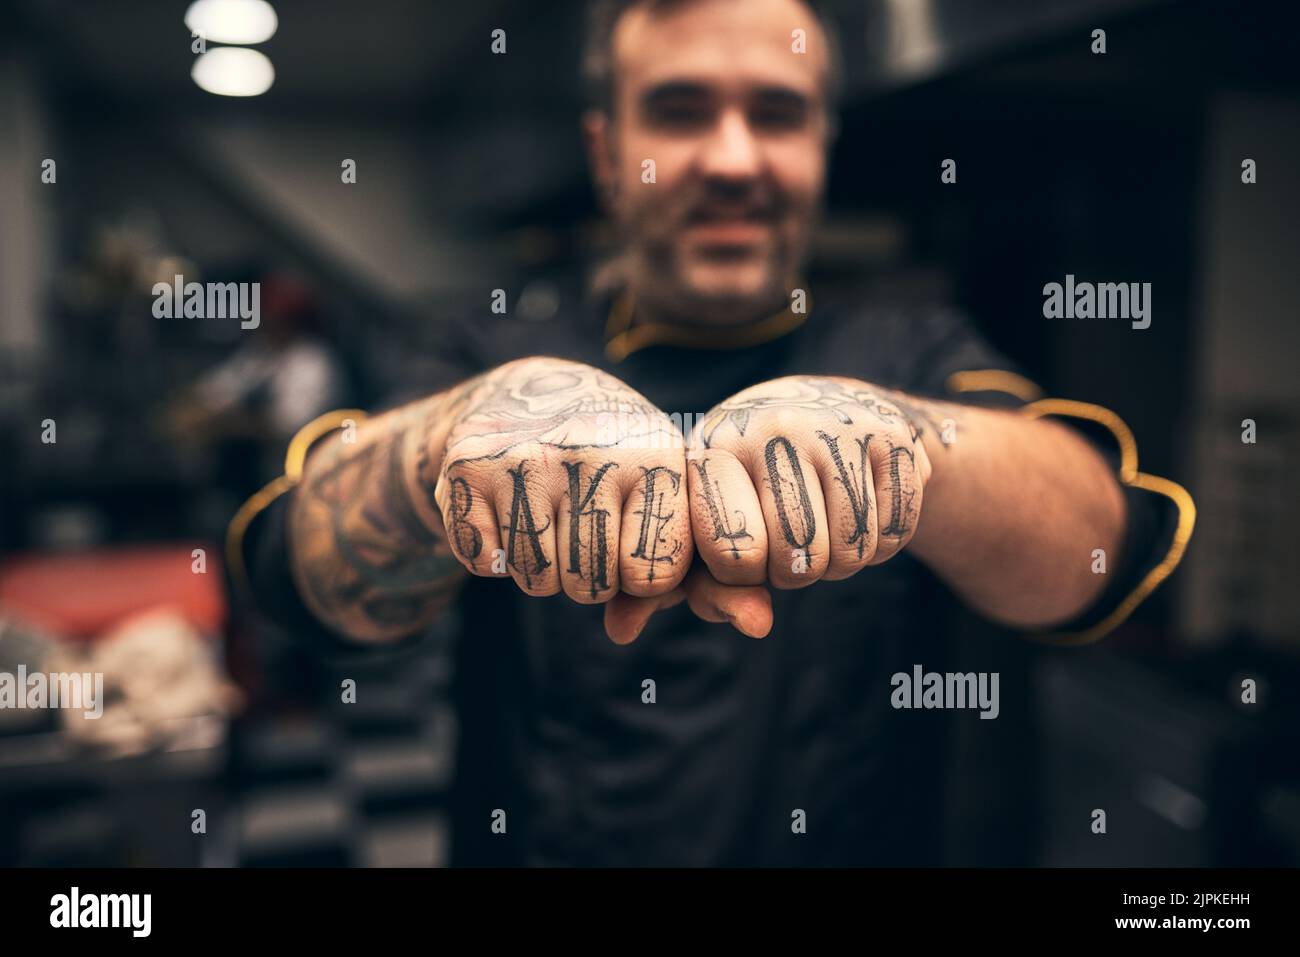 J'adore la pâtisserie. Un jeune chef joyeux tenant ses poings à l'appareil photo avec les mots tatoués sur eux Bake Love. Banque D'Images